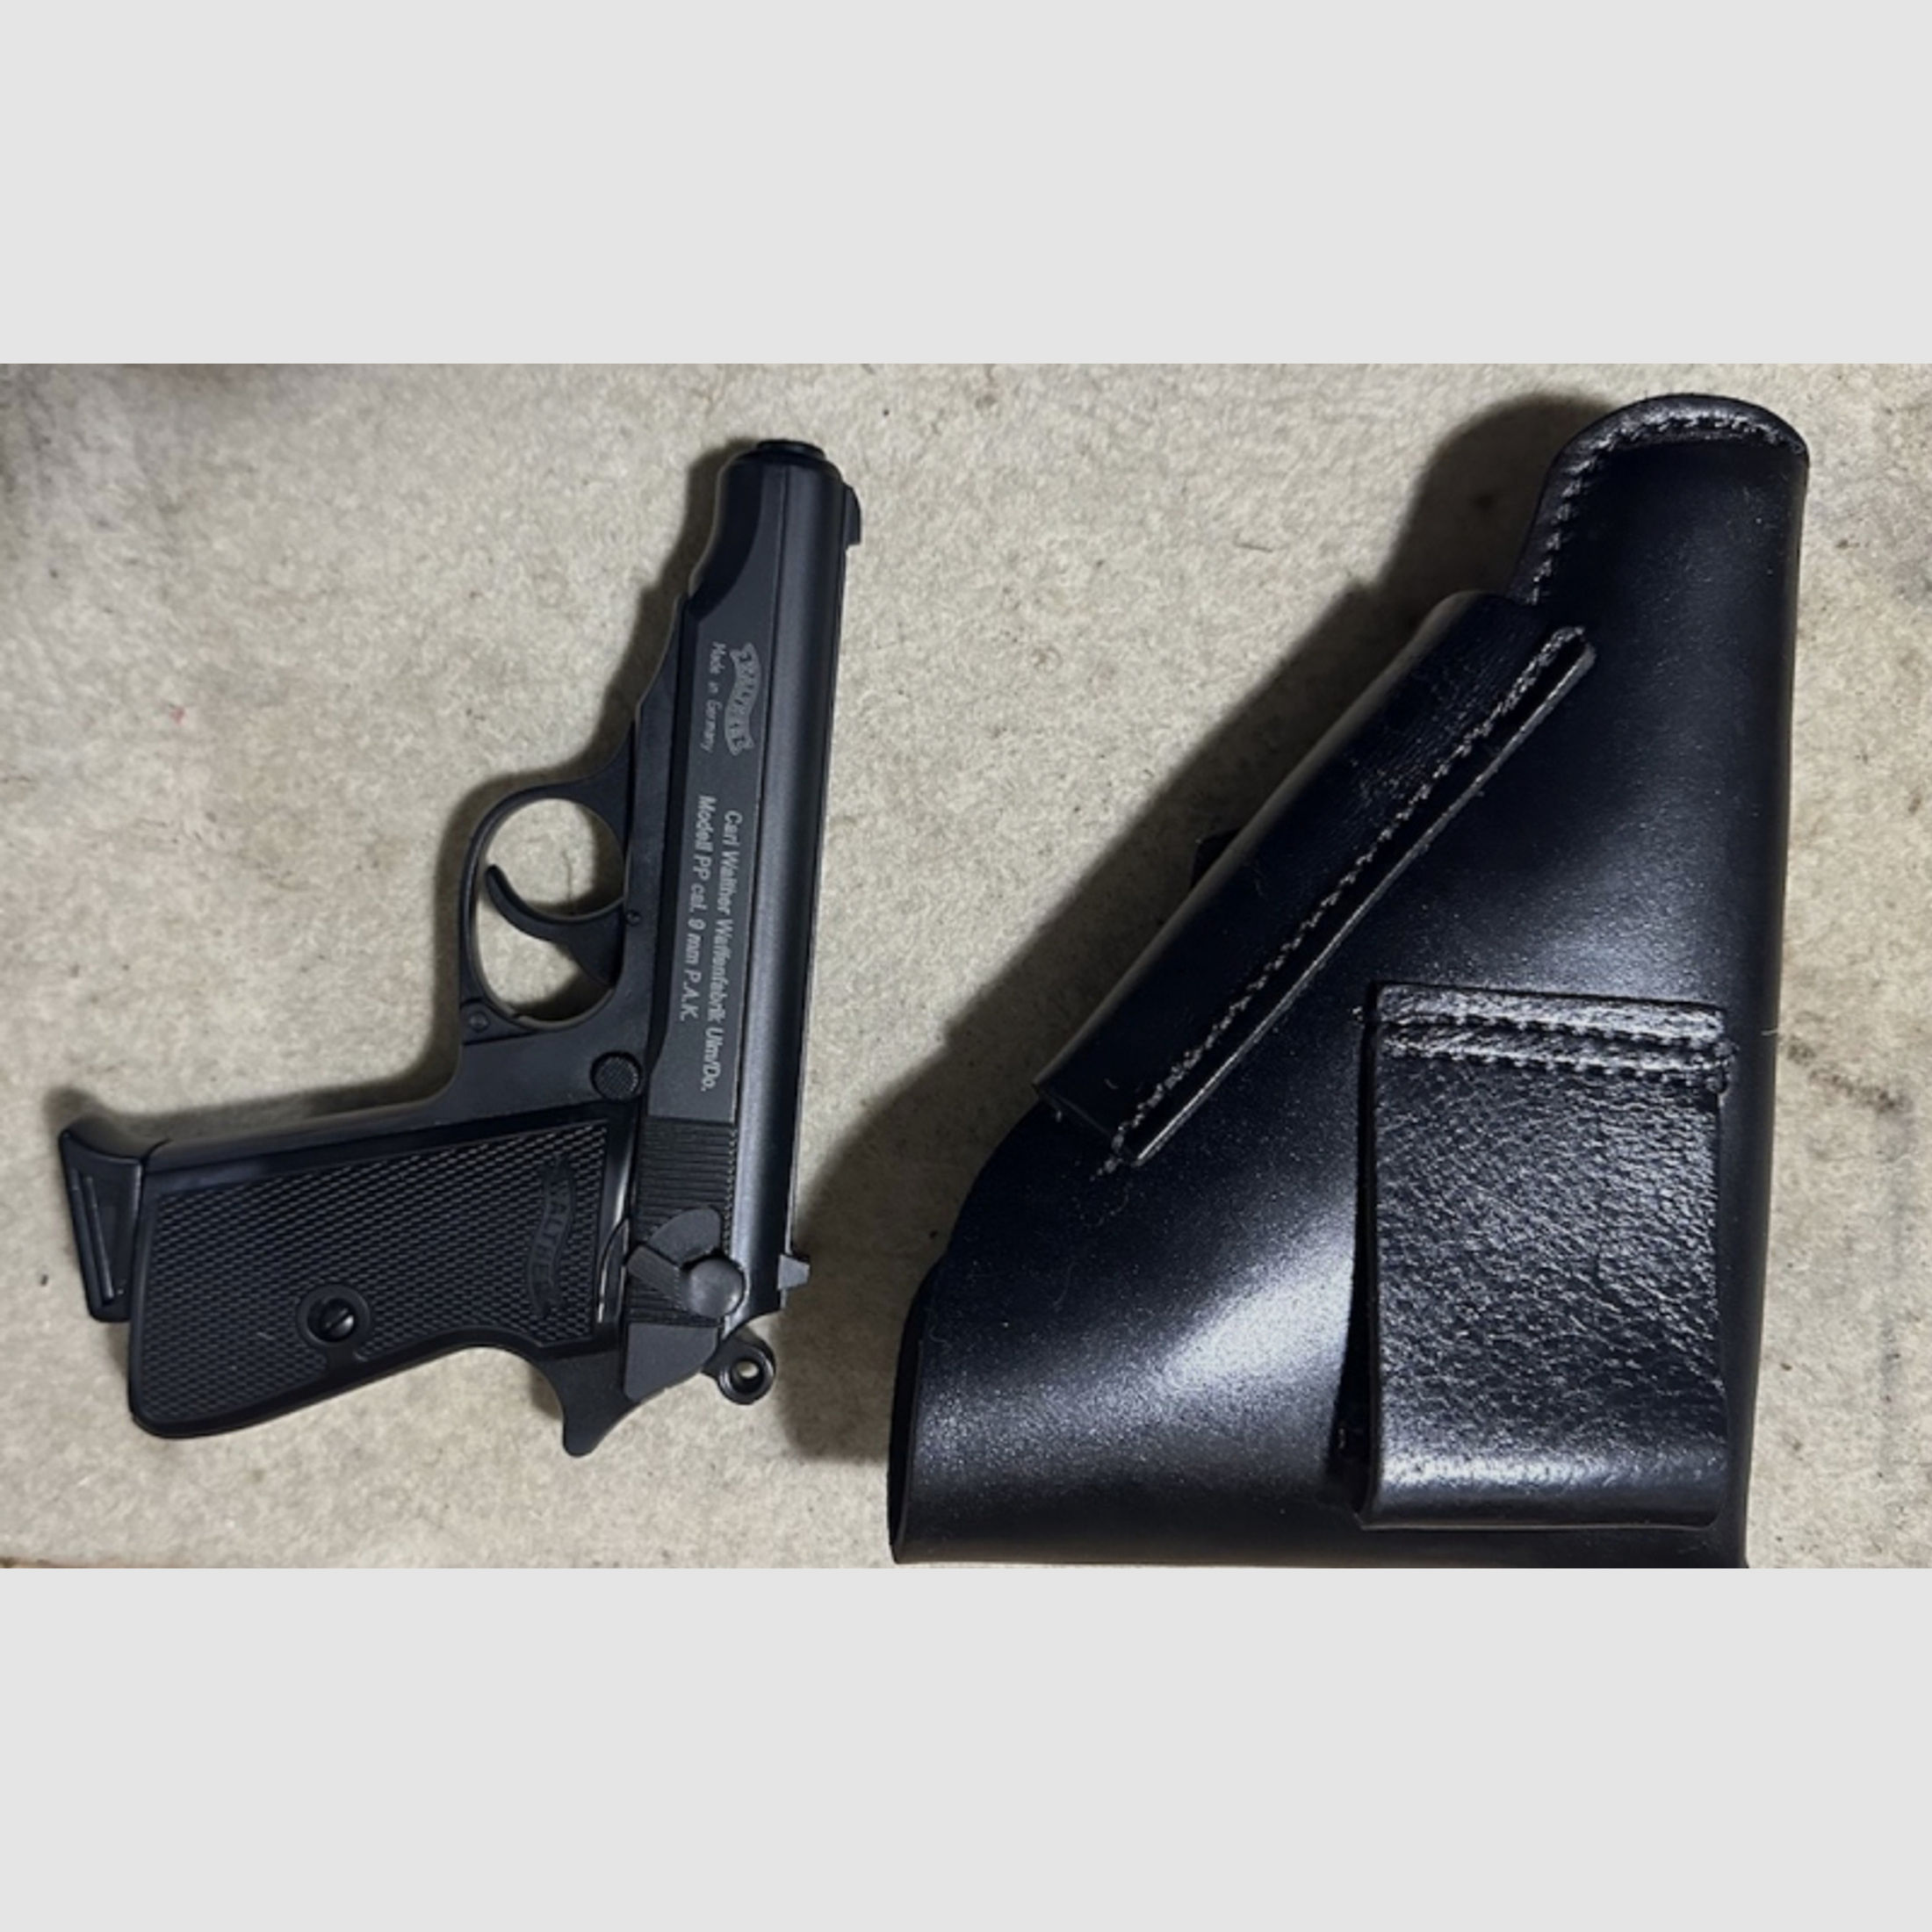 Pistolentasche für Walther PPK oder ähnlich